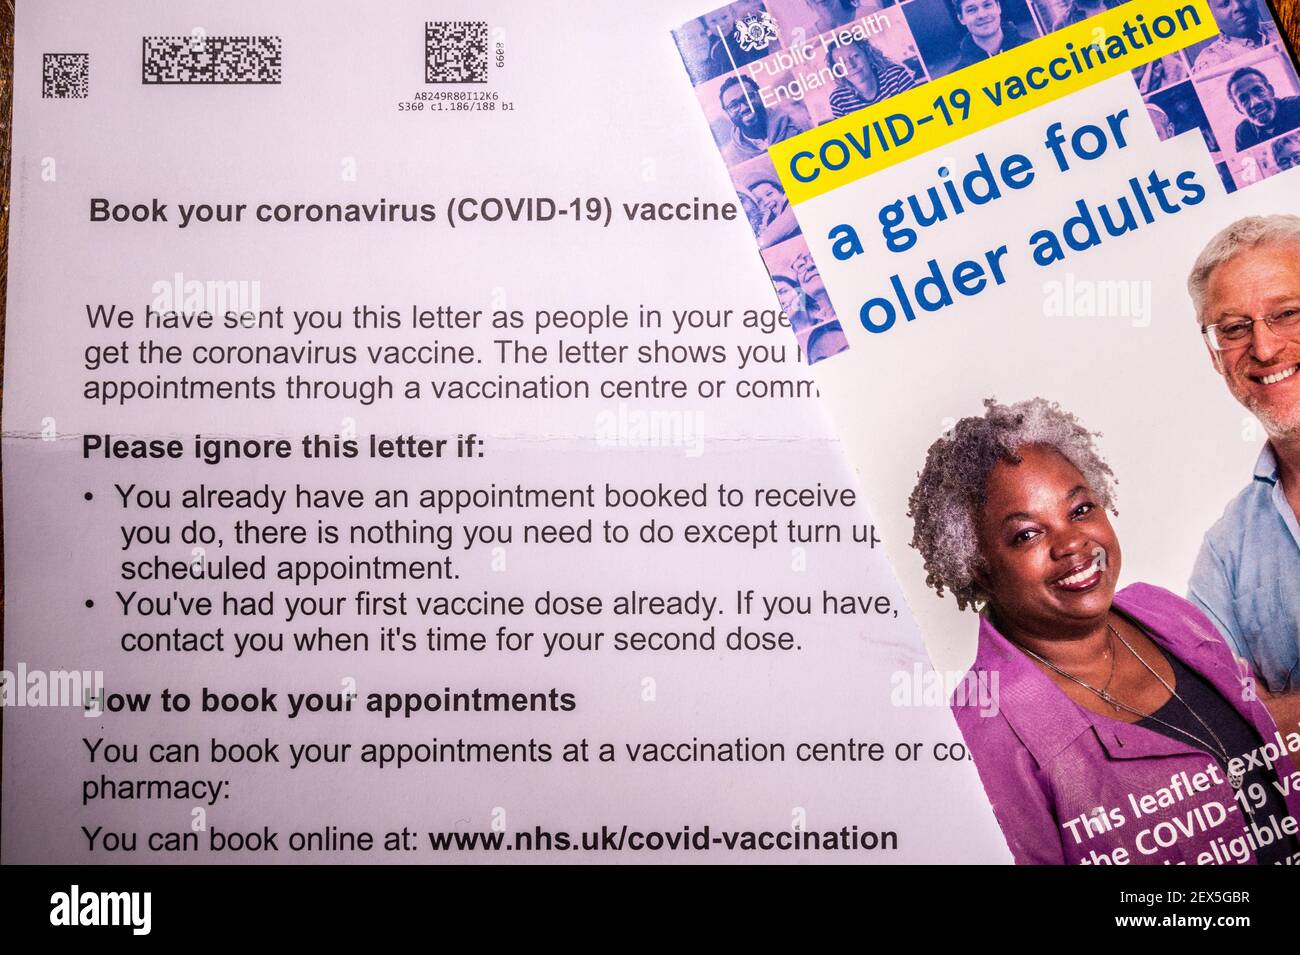 Lettre d'invitation du NHS pour réserver une vaccination contre le coronavirus pour une personne de plus de 60 ans avec une notice d'orientation. Retouché pour supprimer les informations personnelles. Banque D'Images